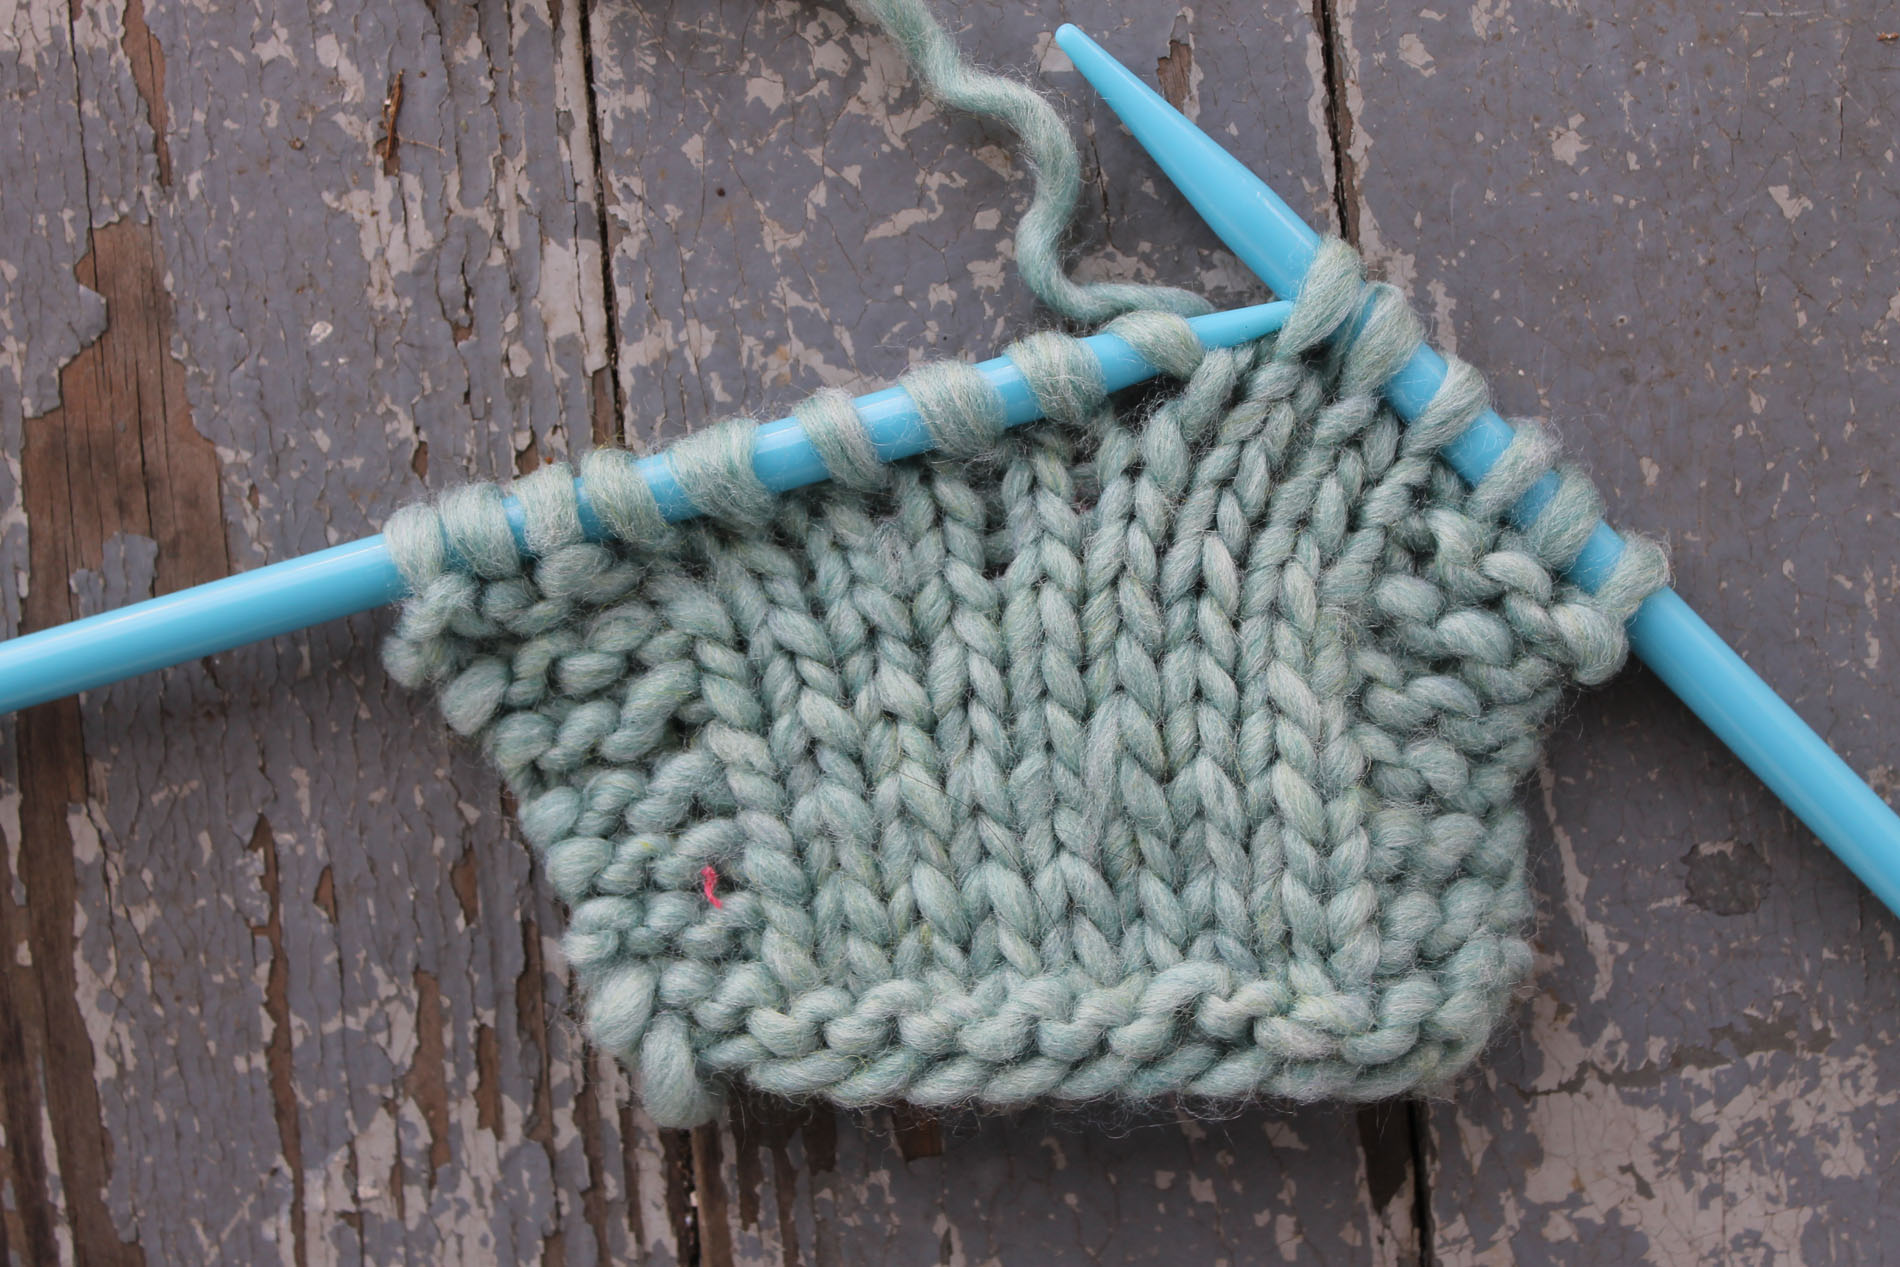 Make one left in knitting